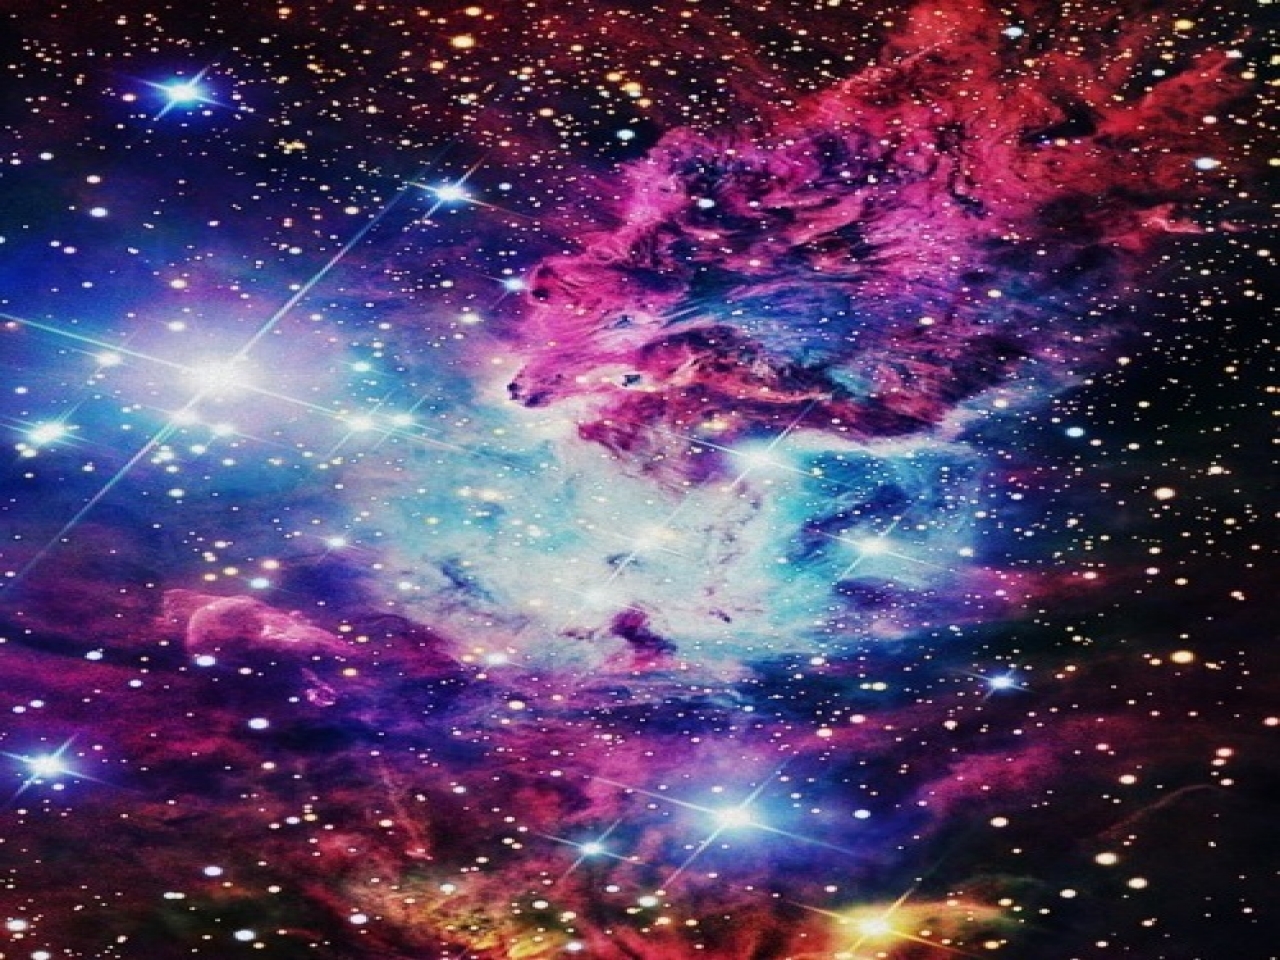 hübsche galaxie wallpaper,himmel,nebel,astronomisches objekt,galaxis,lila